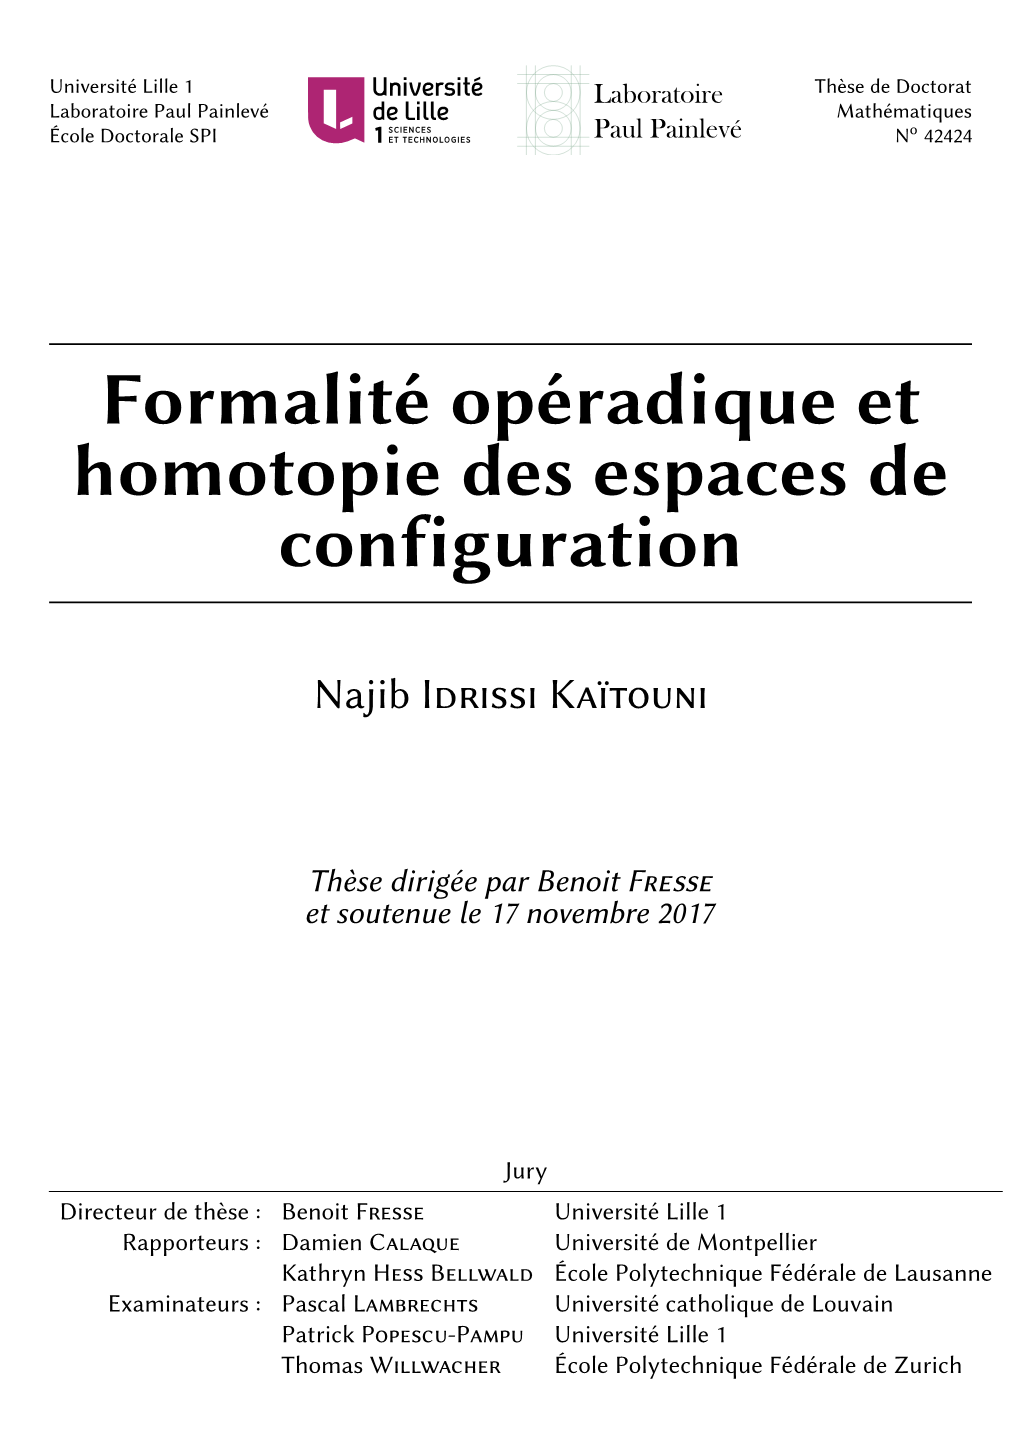 Formalité Opéradique Et Homotopie Des Espaces De Configuration